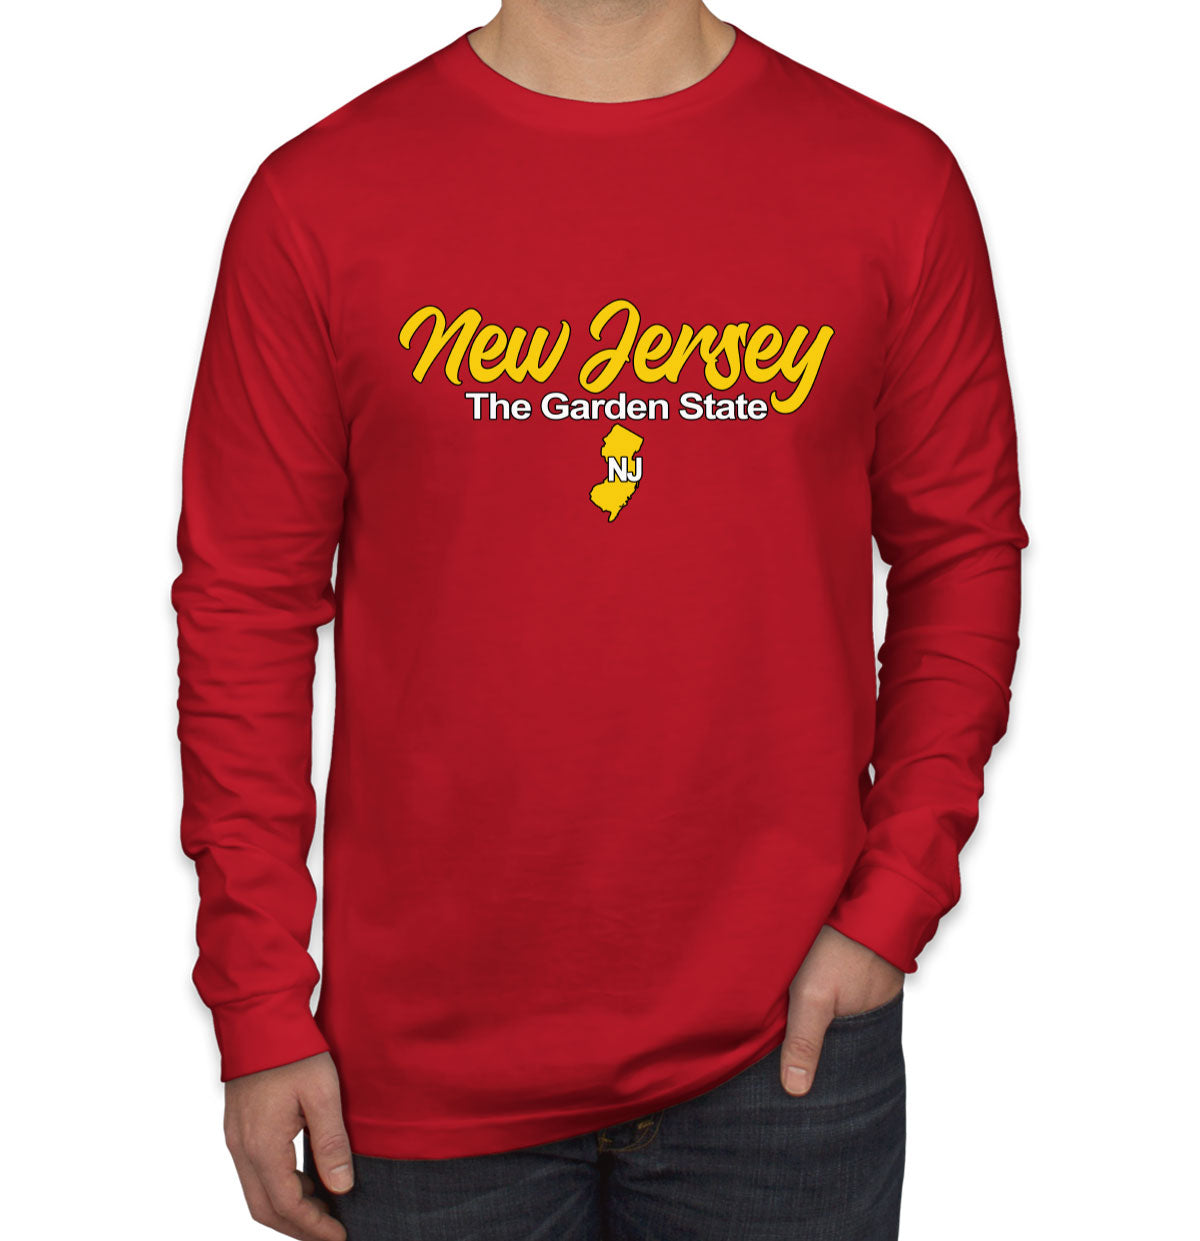 New Jersey The Garden State Men's Long Sleeve Shirt